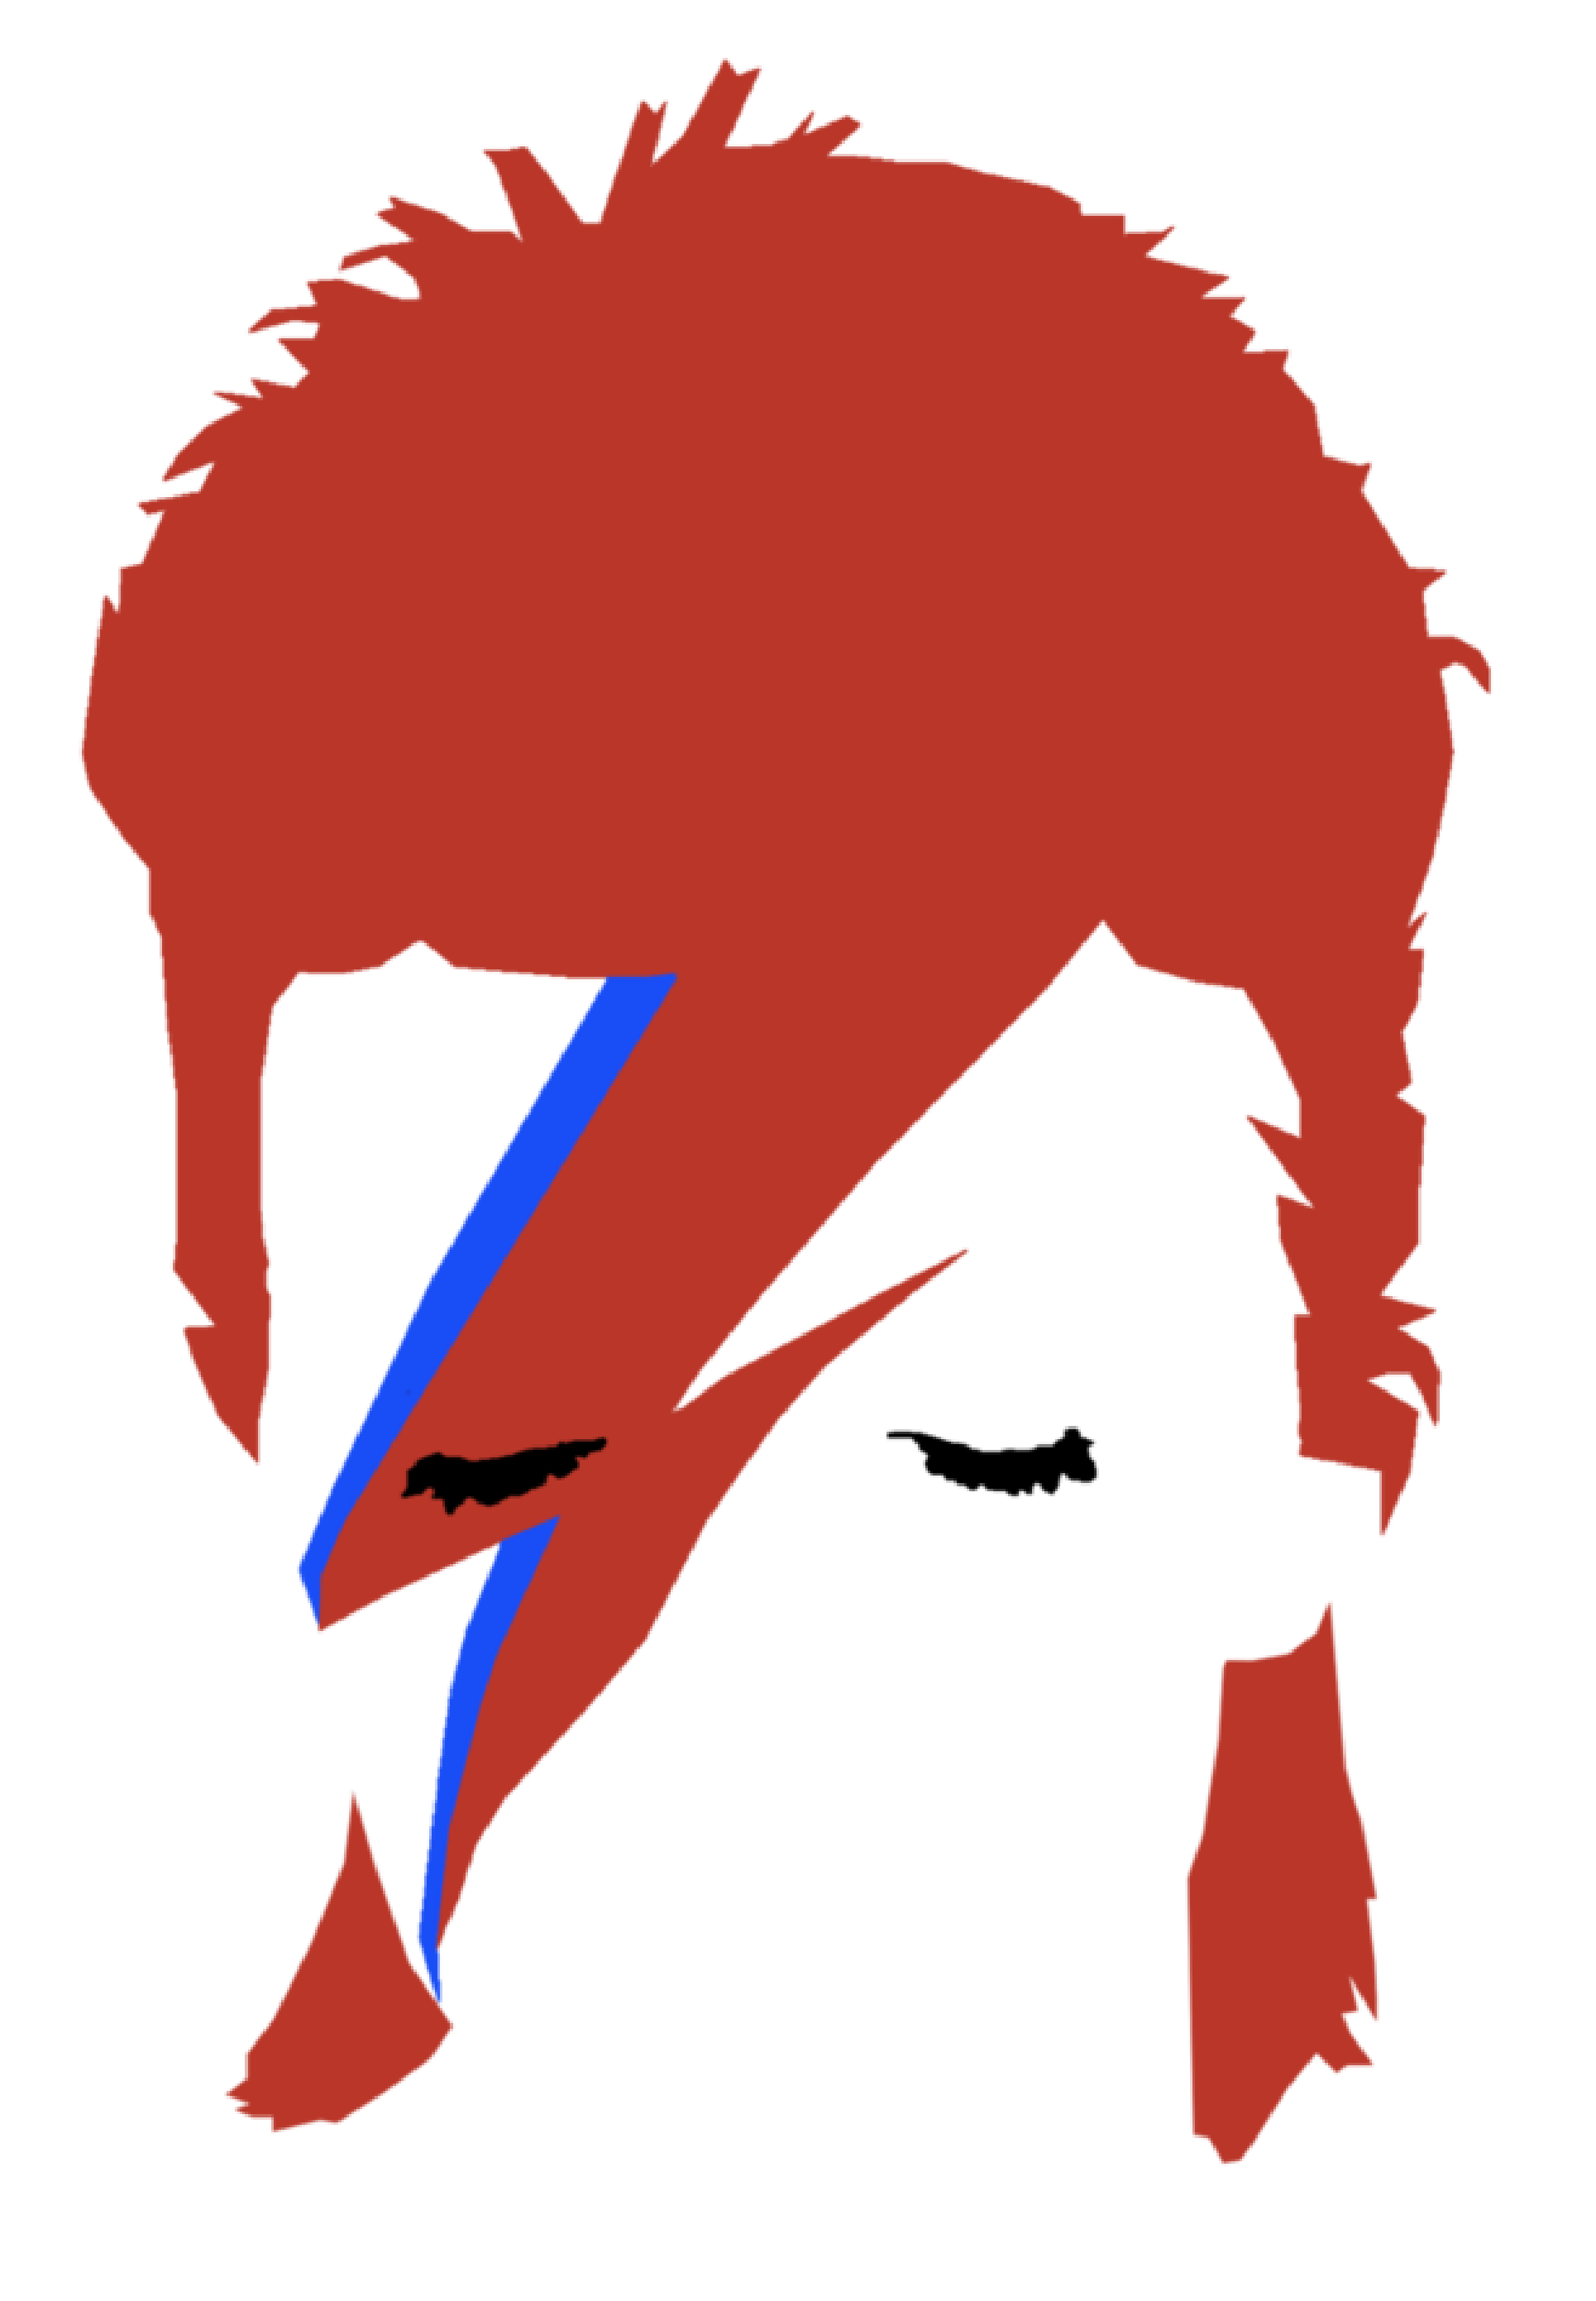 Bowie version